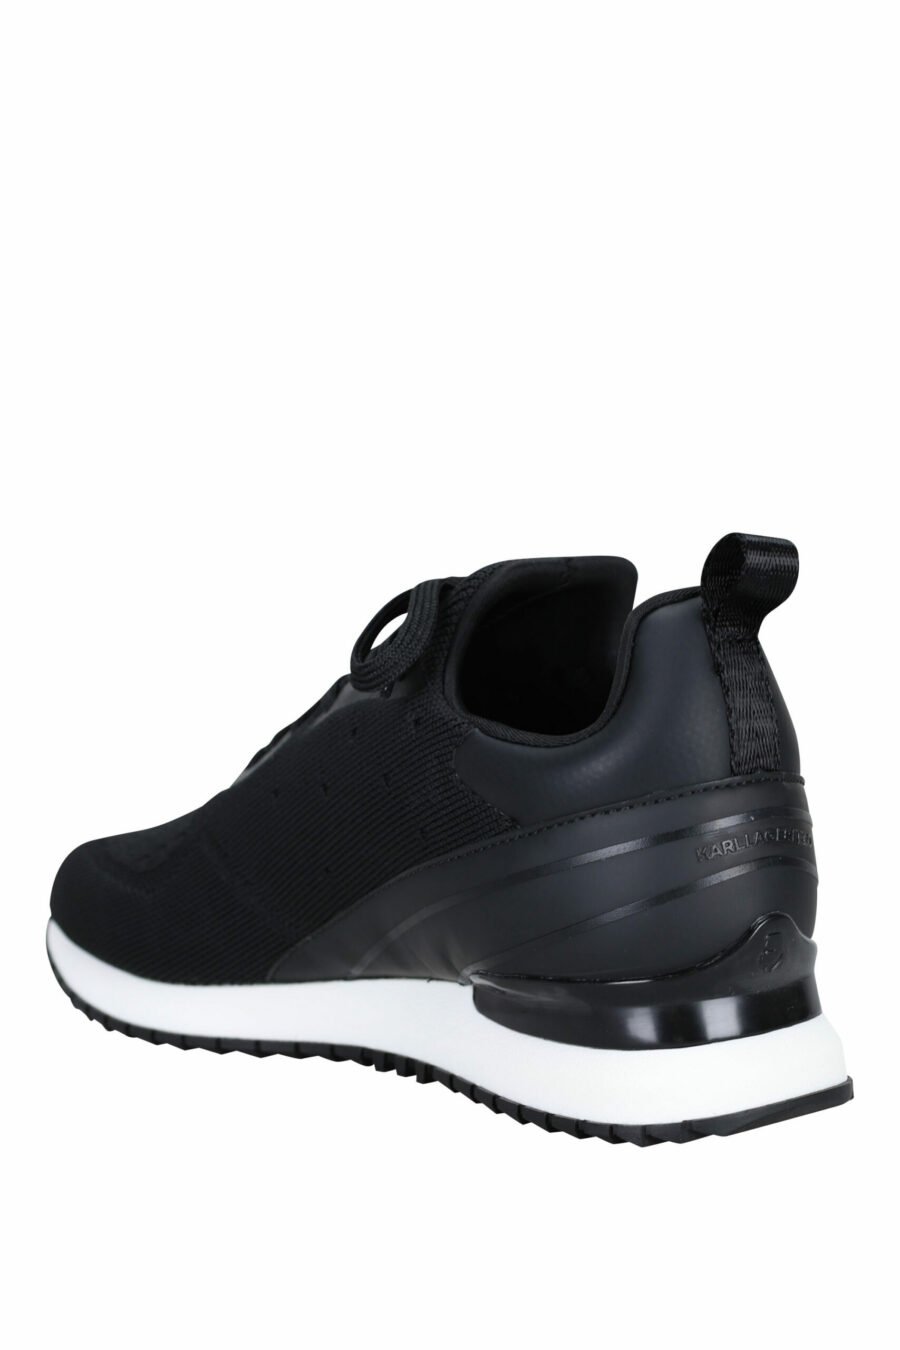 Schwarze "velocitor" Schuhe mit weißem "rue st guillaume" Logo - 5059529326370 3 skaliert